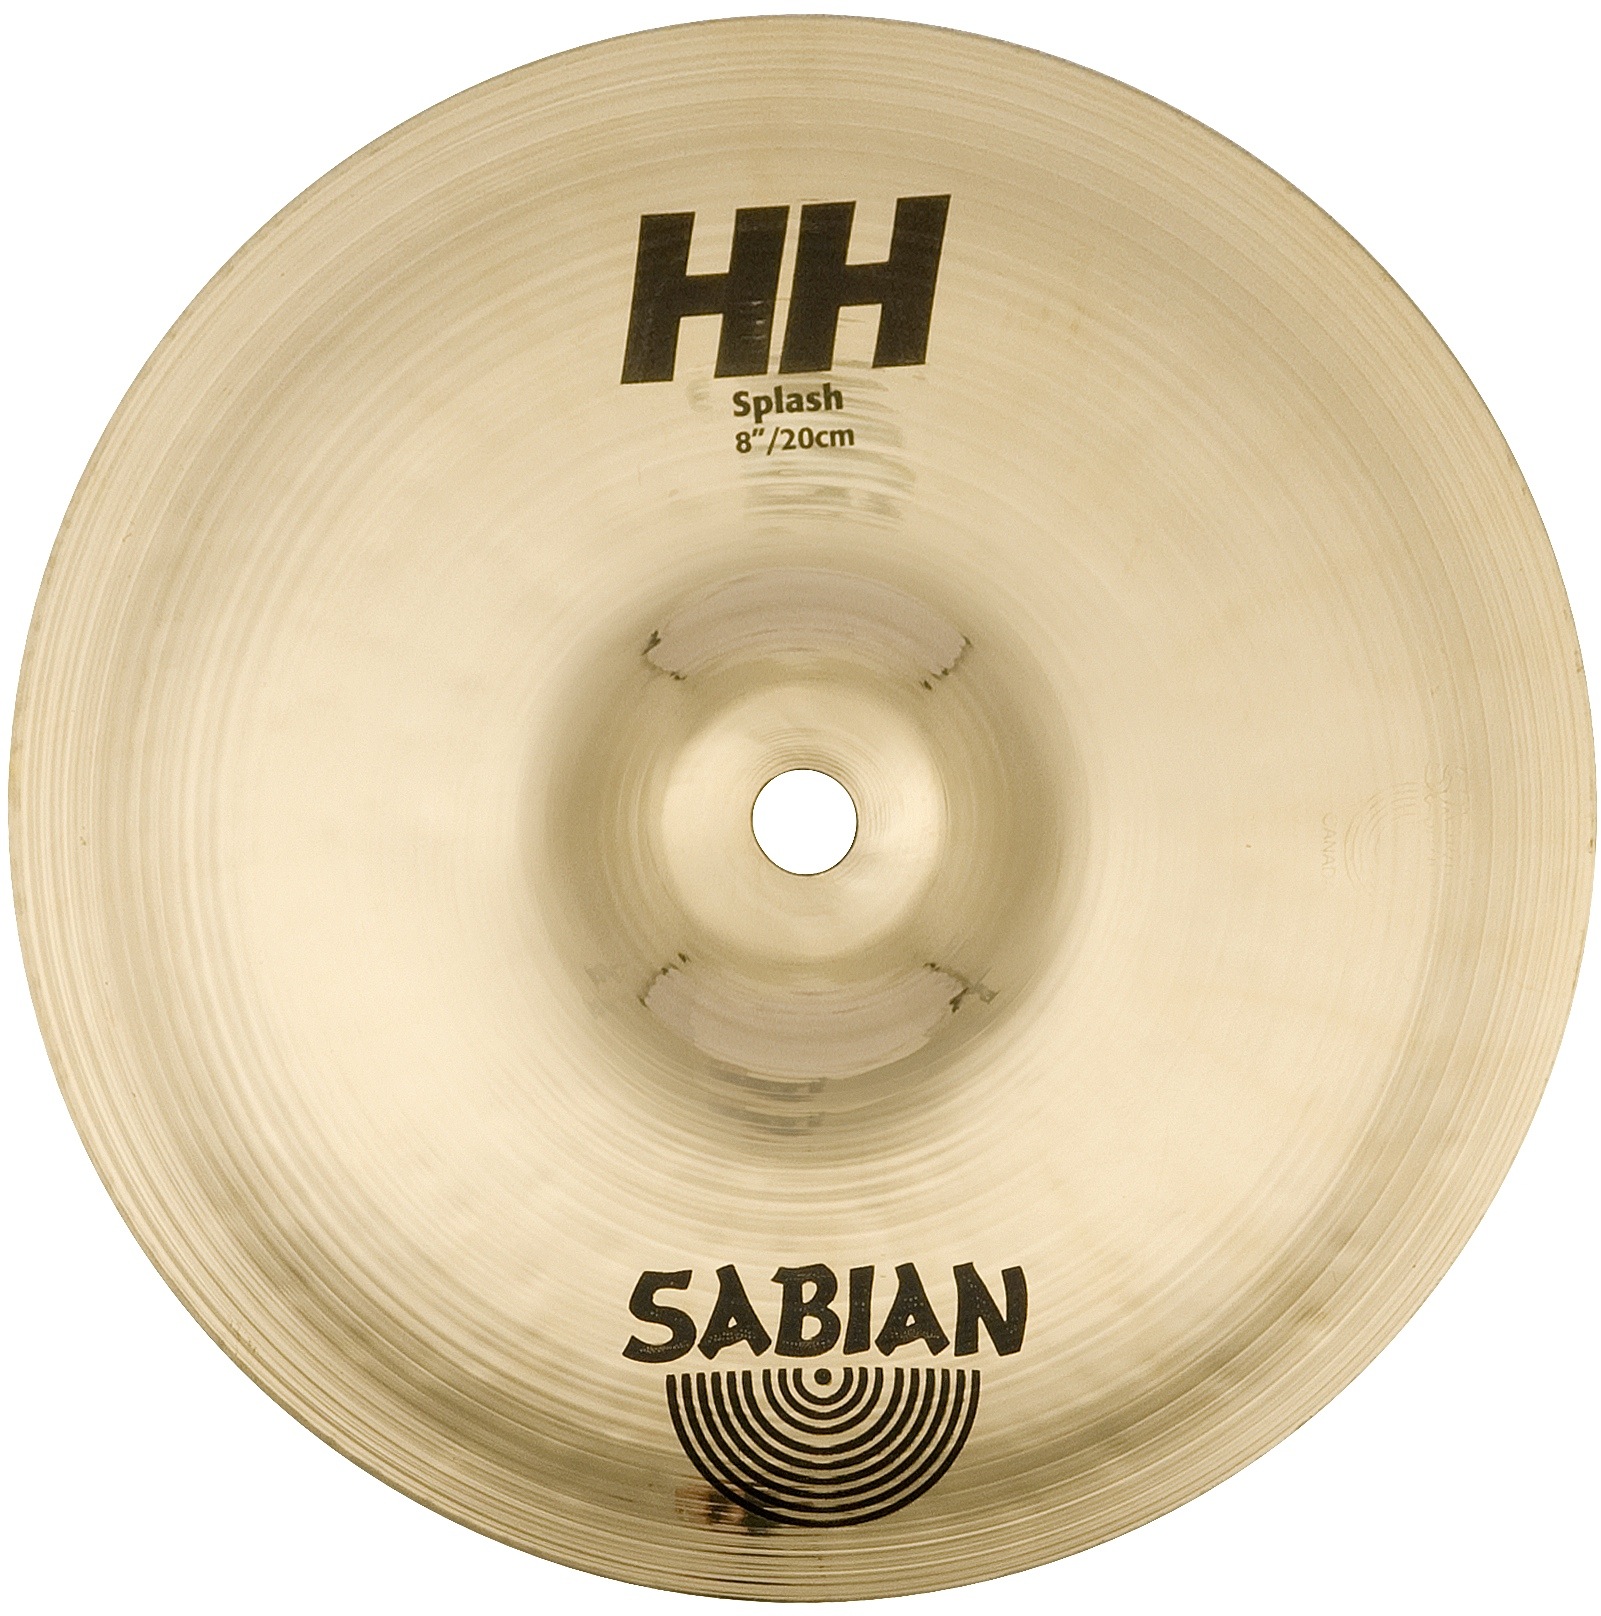 Sabian 8" HH Splash